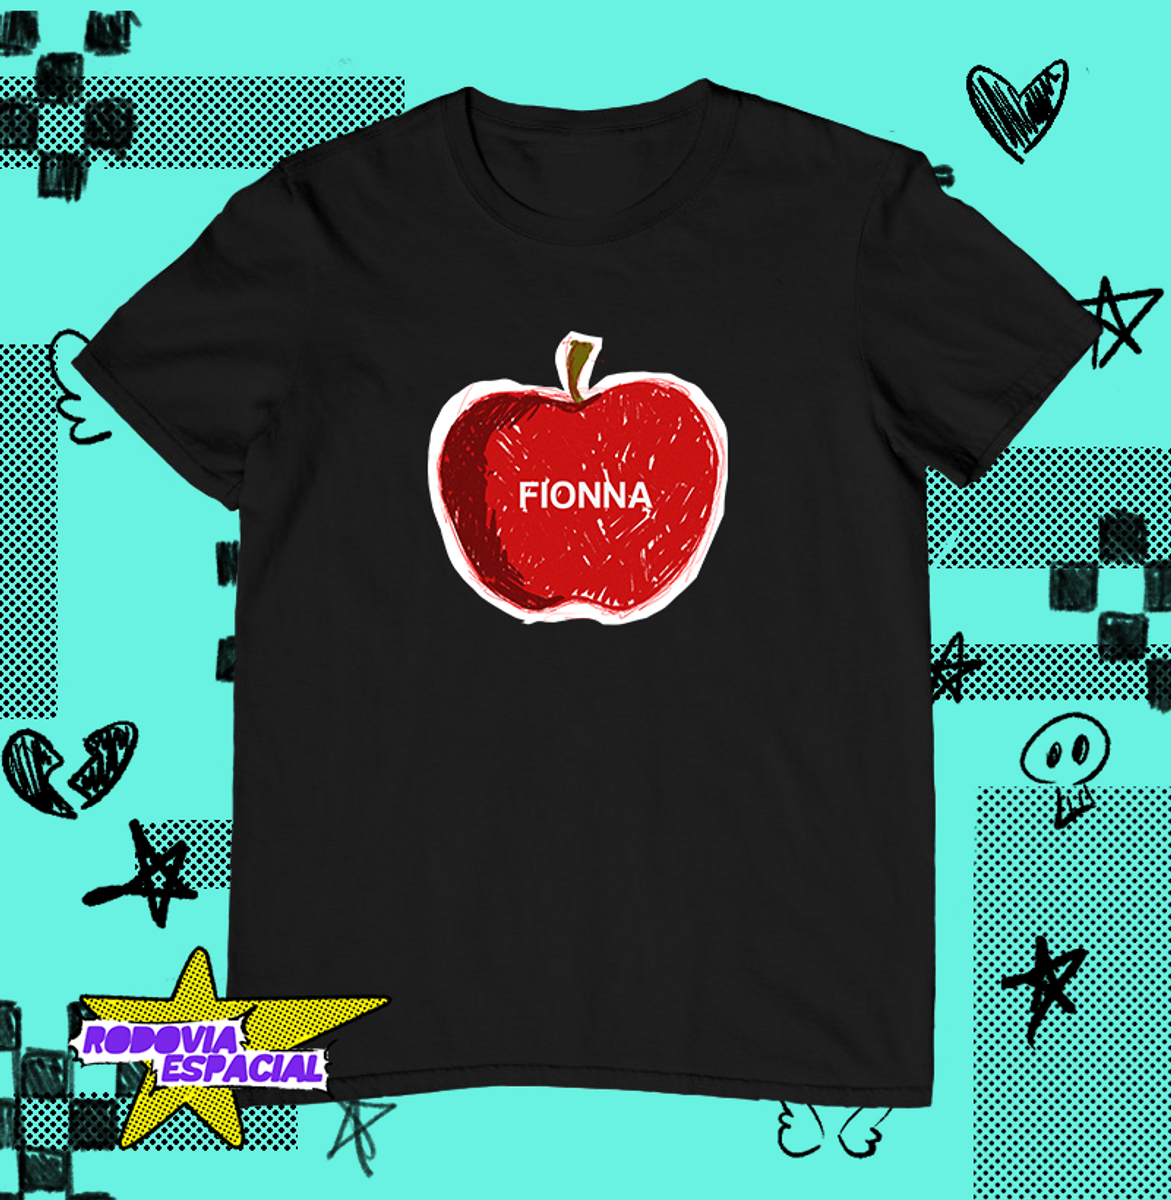 Nome do produto: Camiseta Fionna Apple